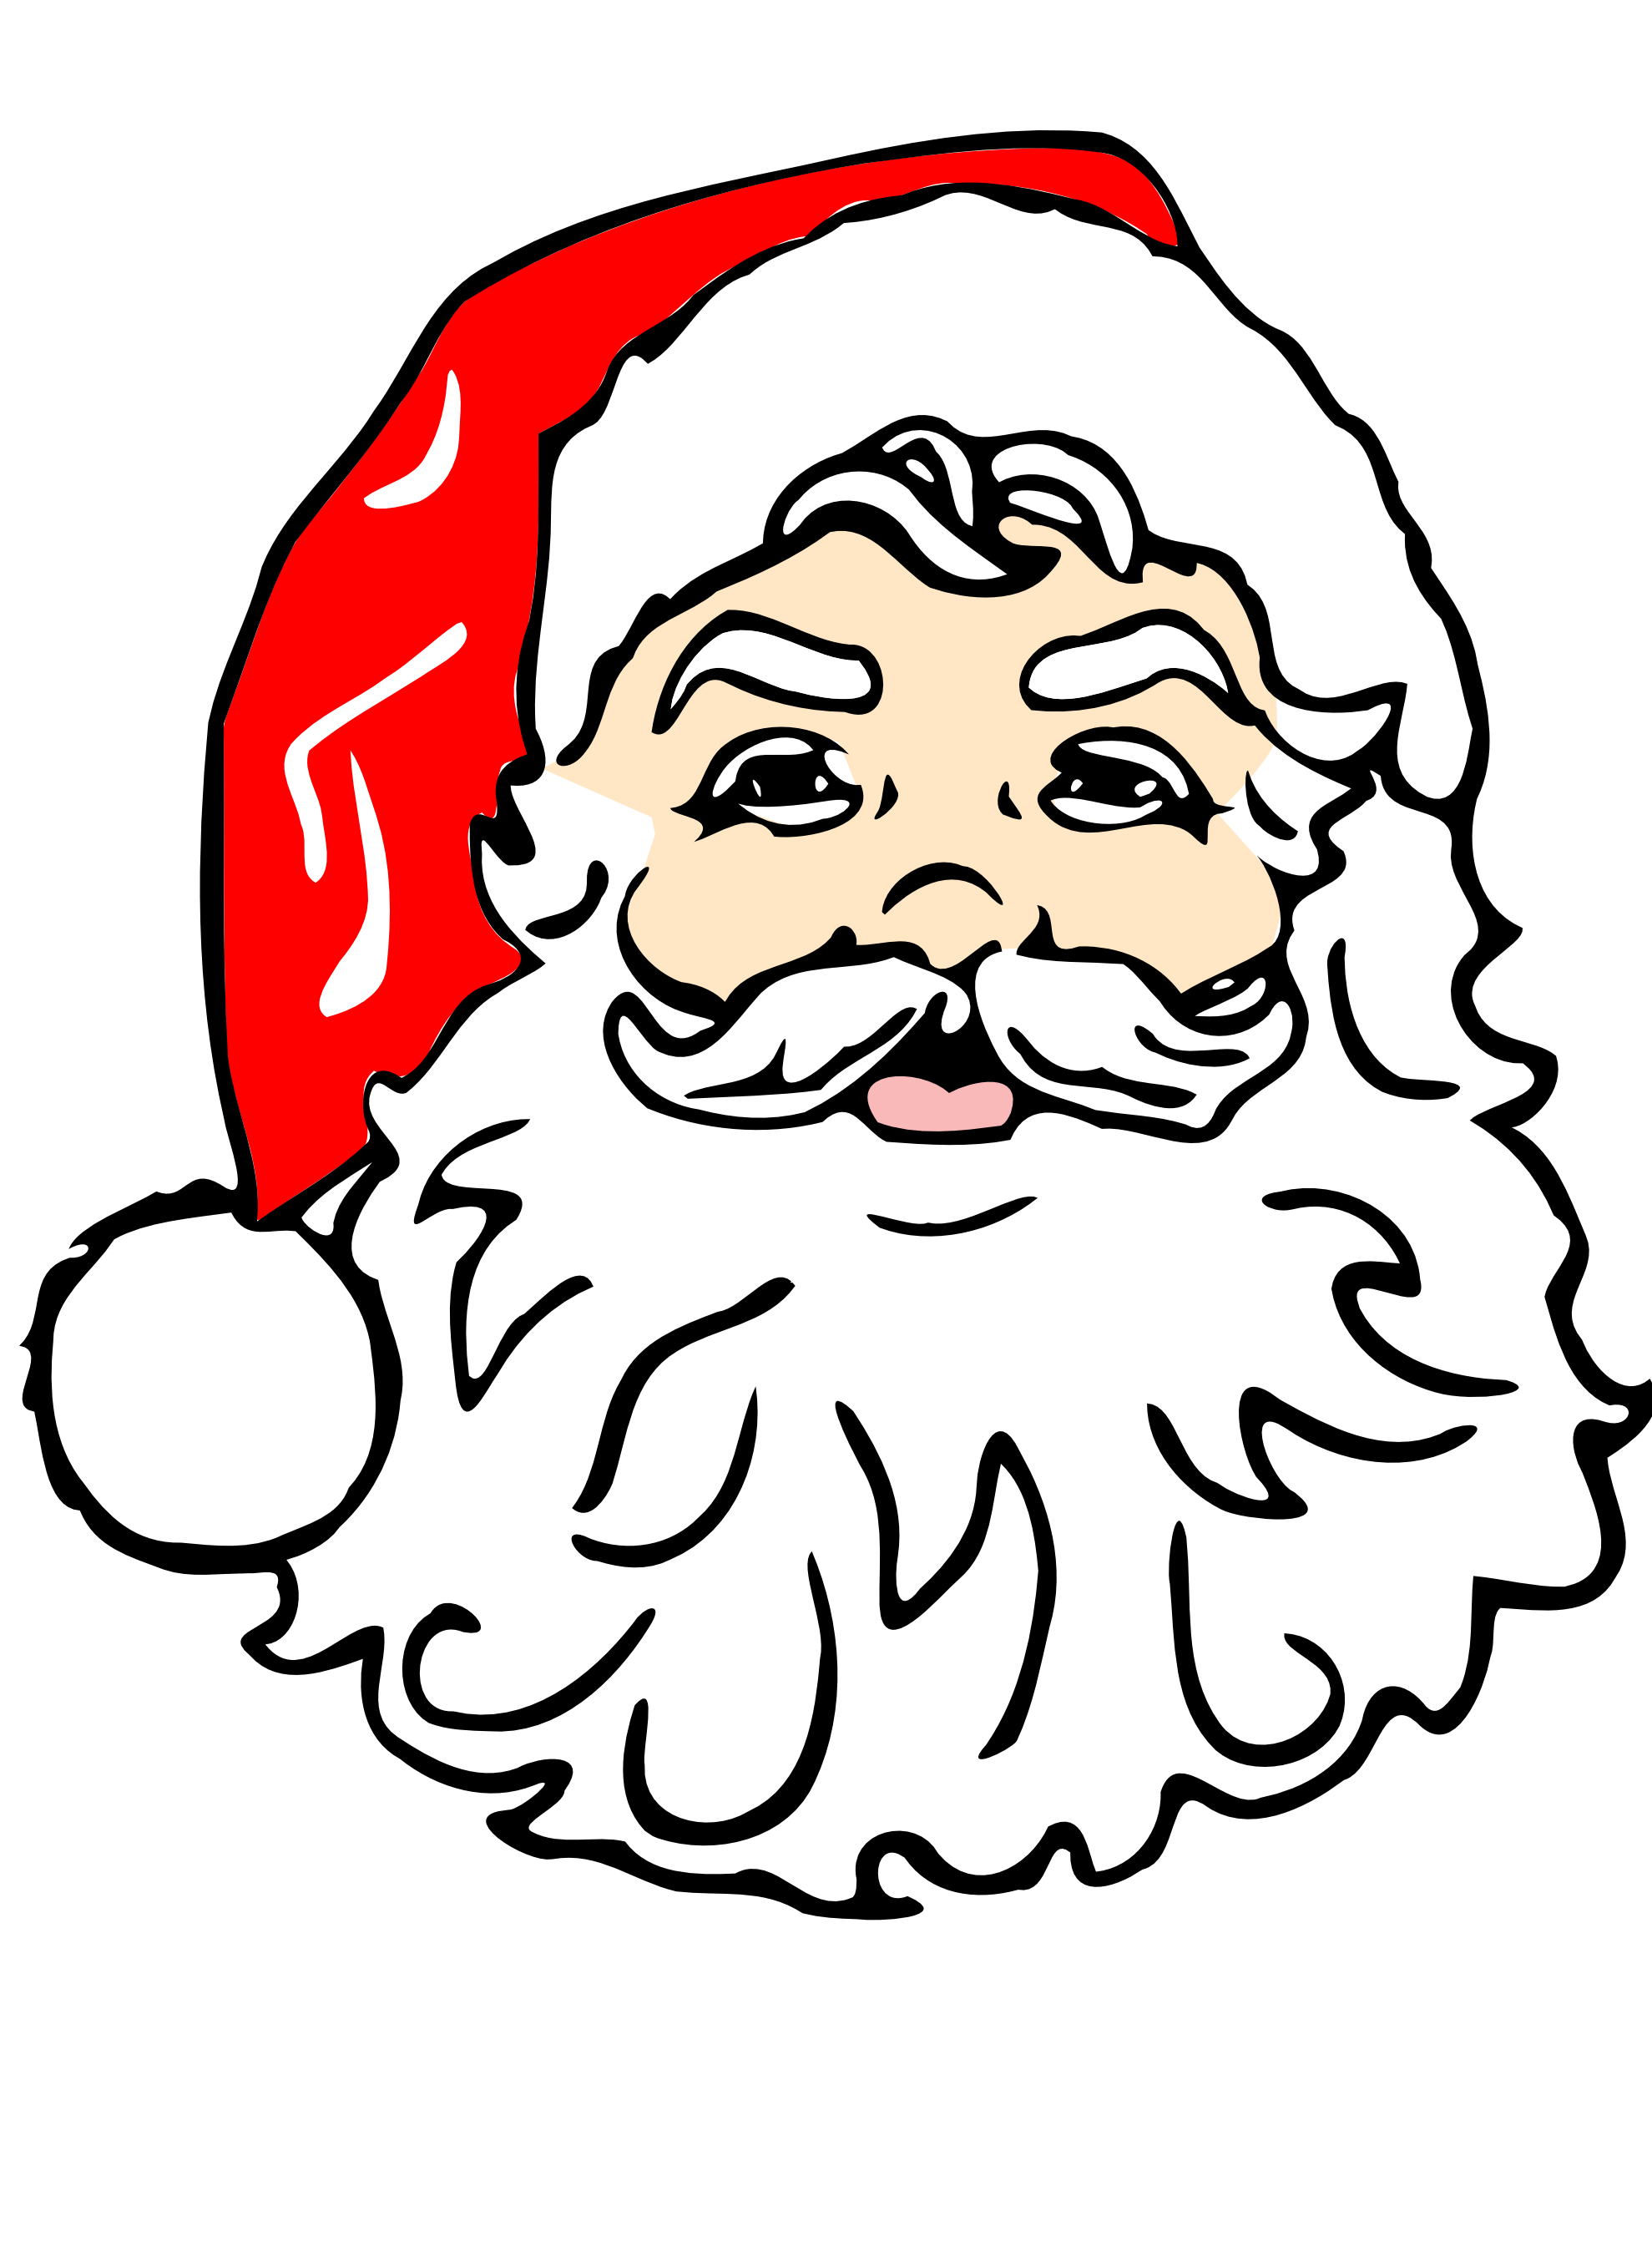 Santa clip art free clipart images 2